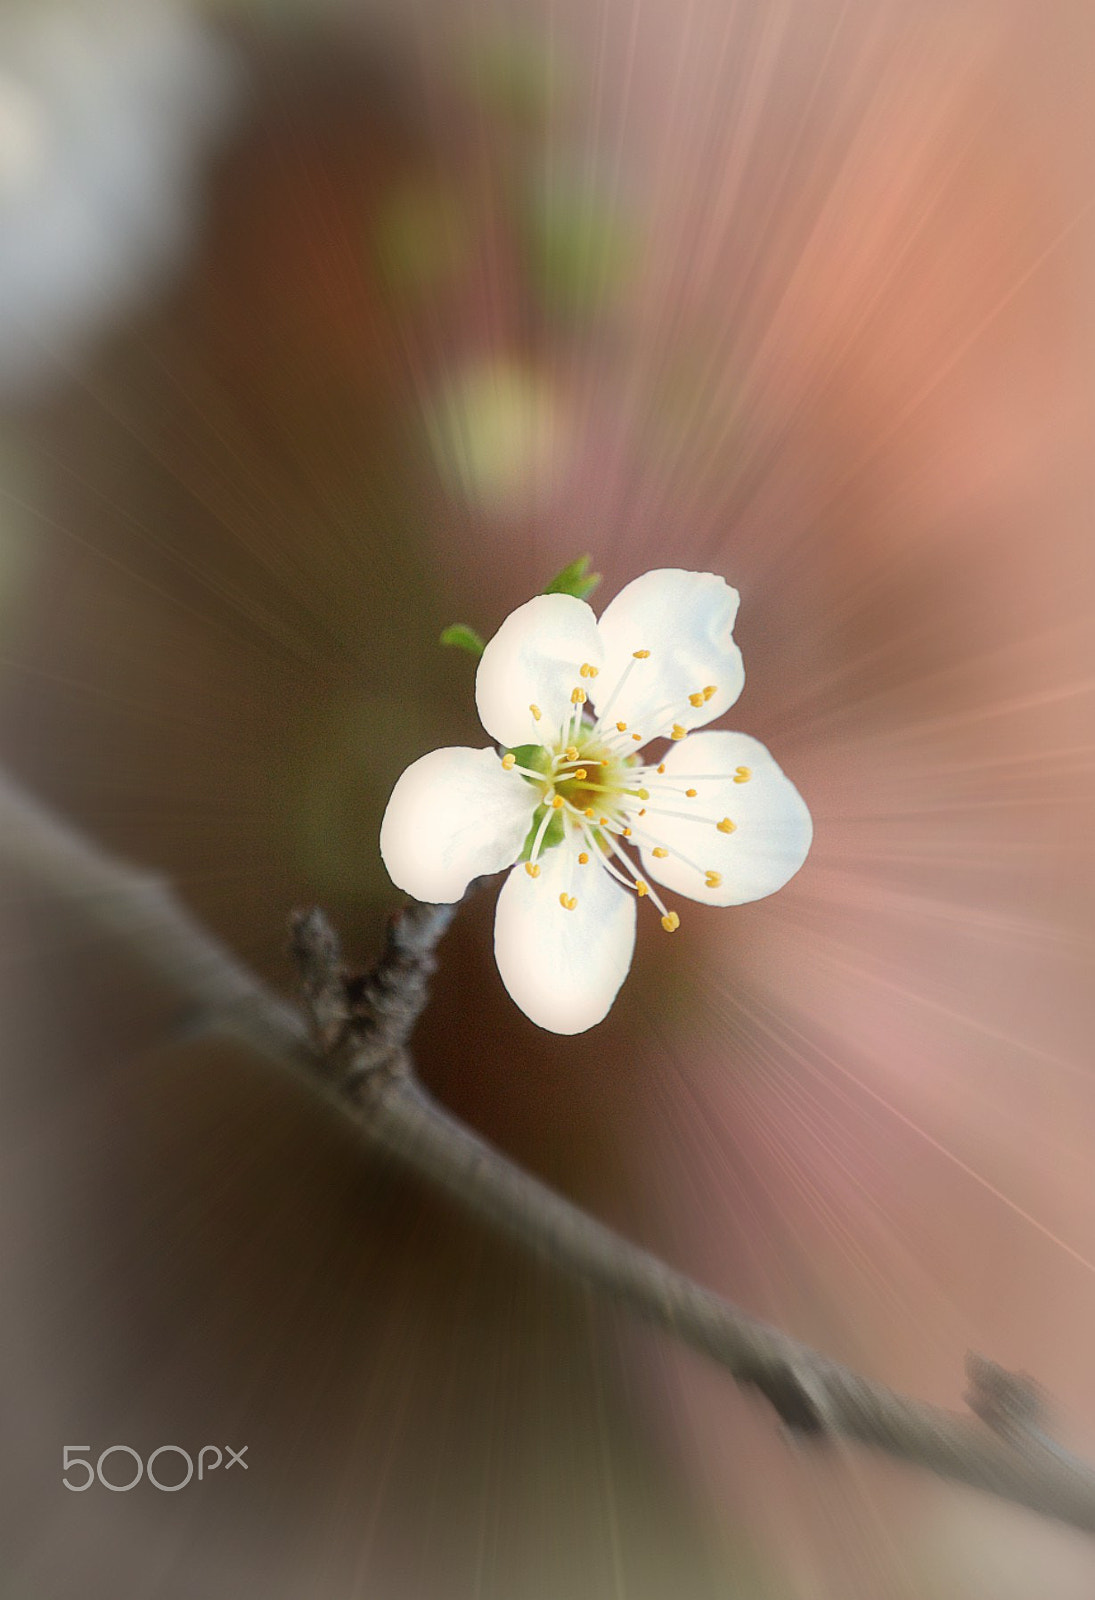 Nikon D3200 sample photo. Spring has come.... photography